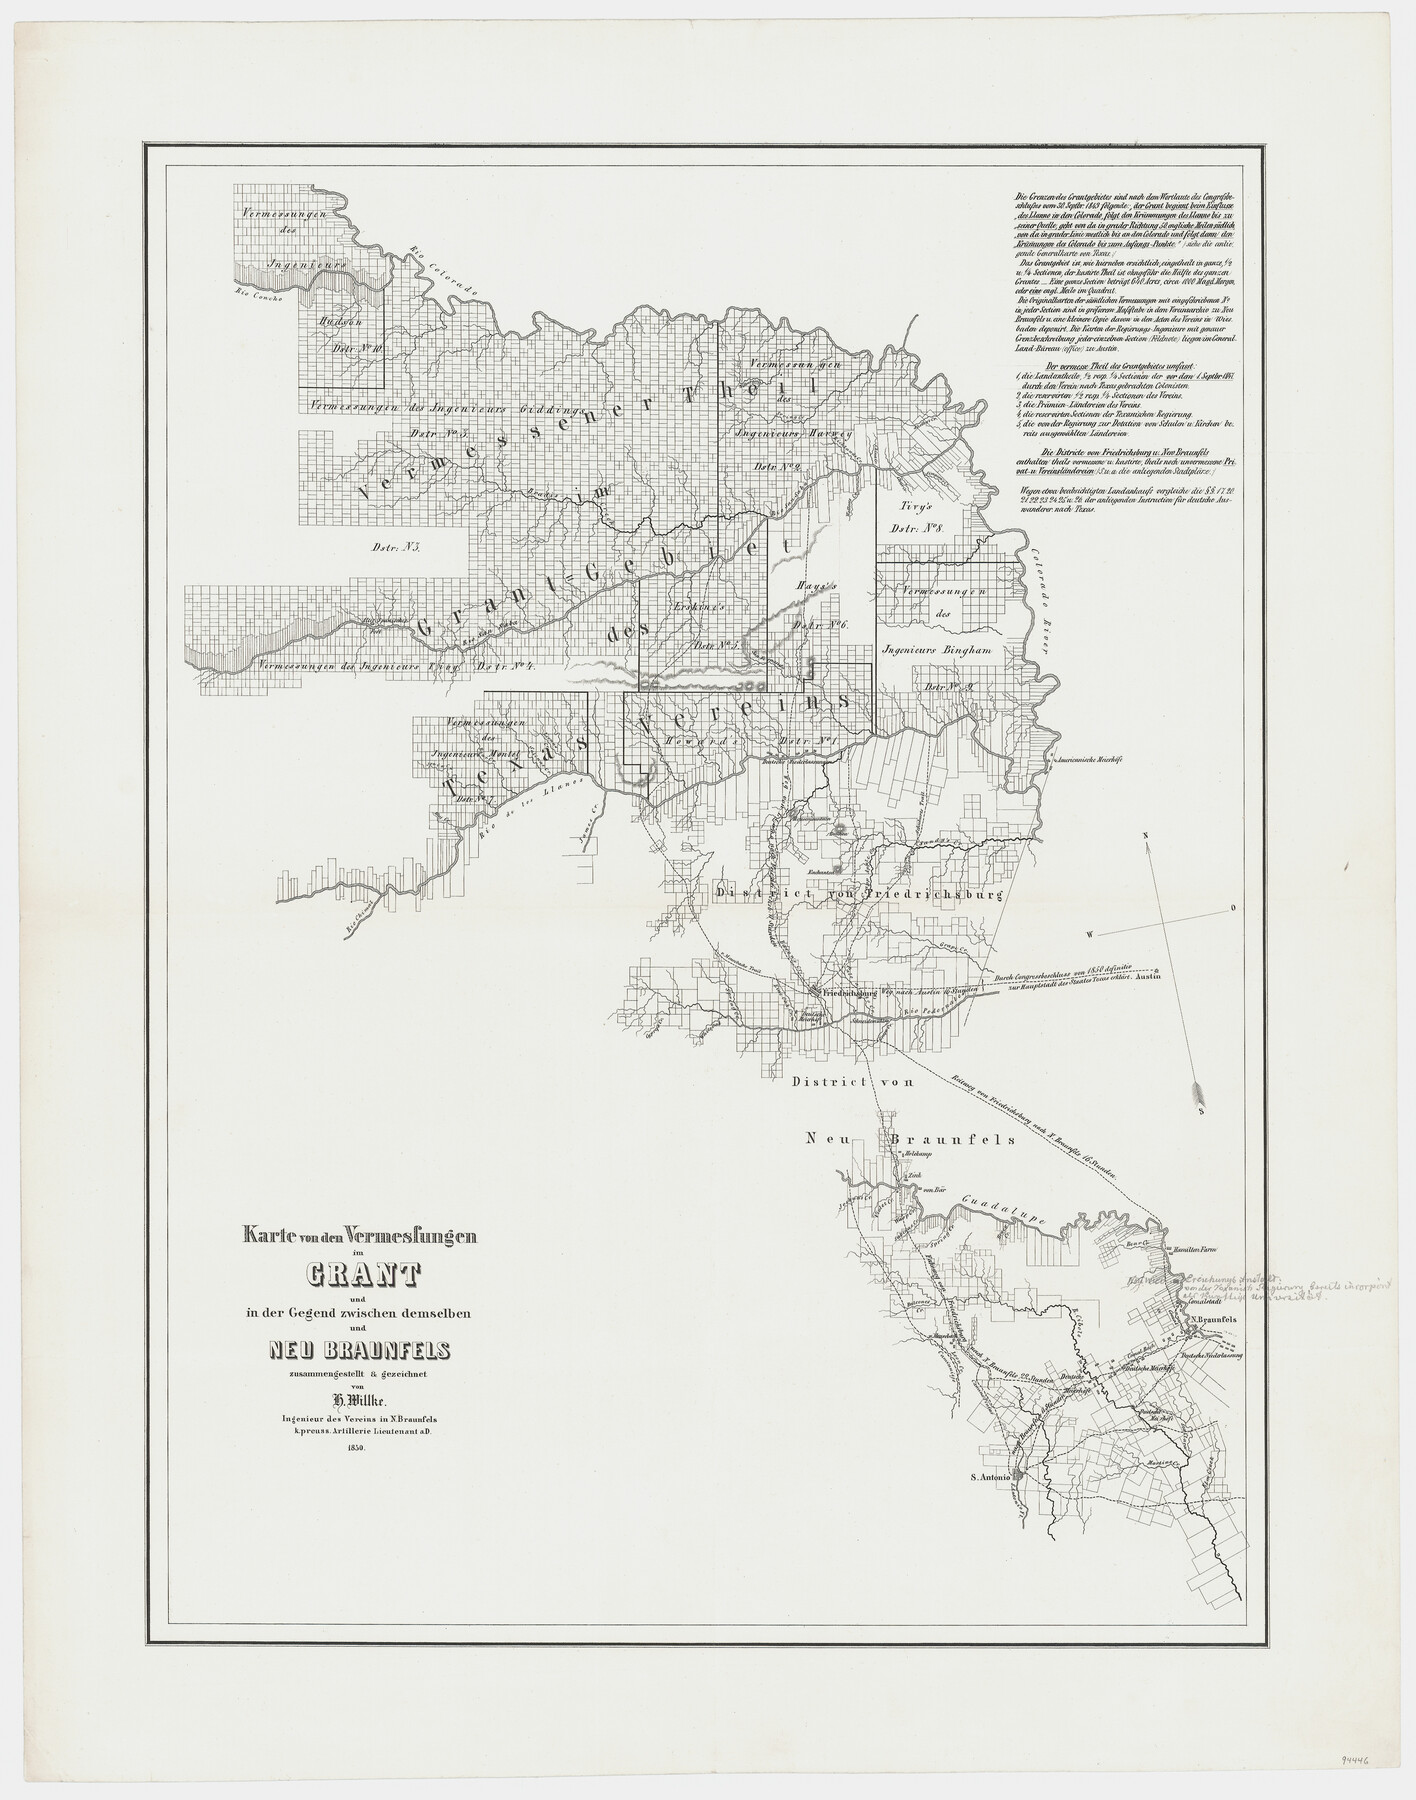 94446, Karte von den Vermessungen im Grant und in der Gegend zwischen demselben und Neu Braunfels, General Map Collection